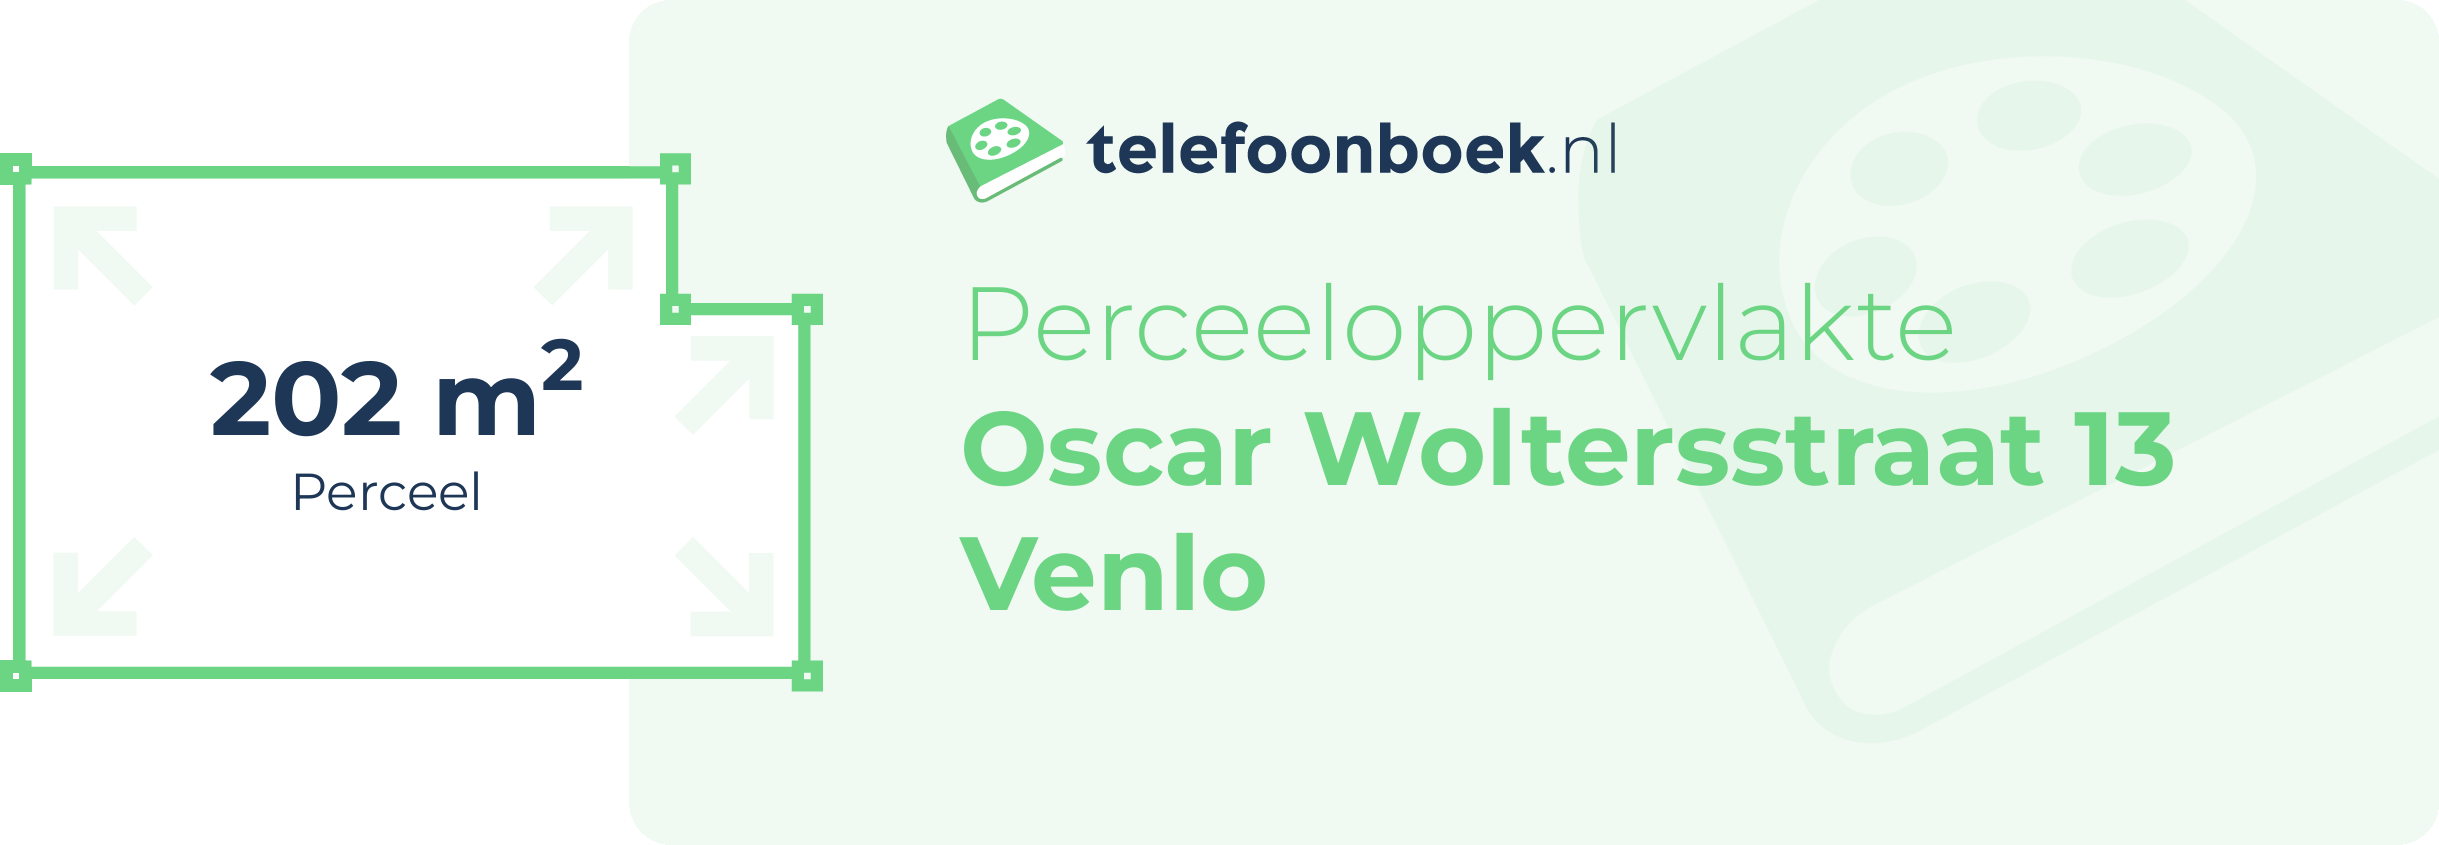 Perceeloppervlakte Oscar Woltersstraat 13 Venlo